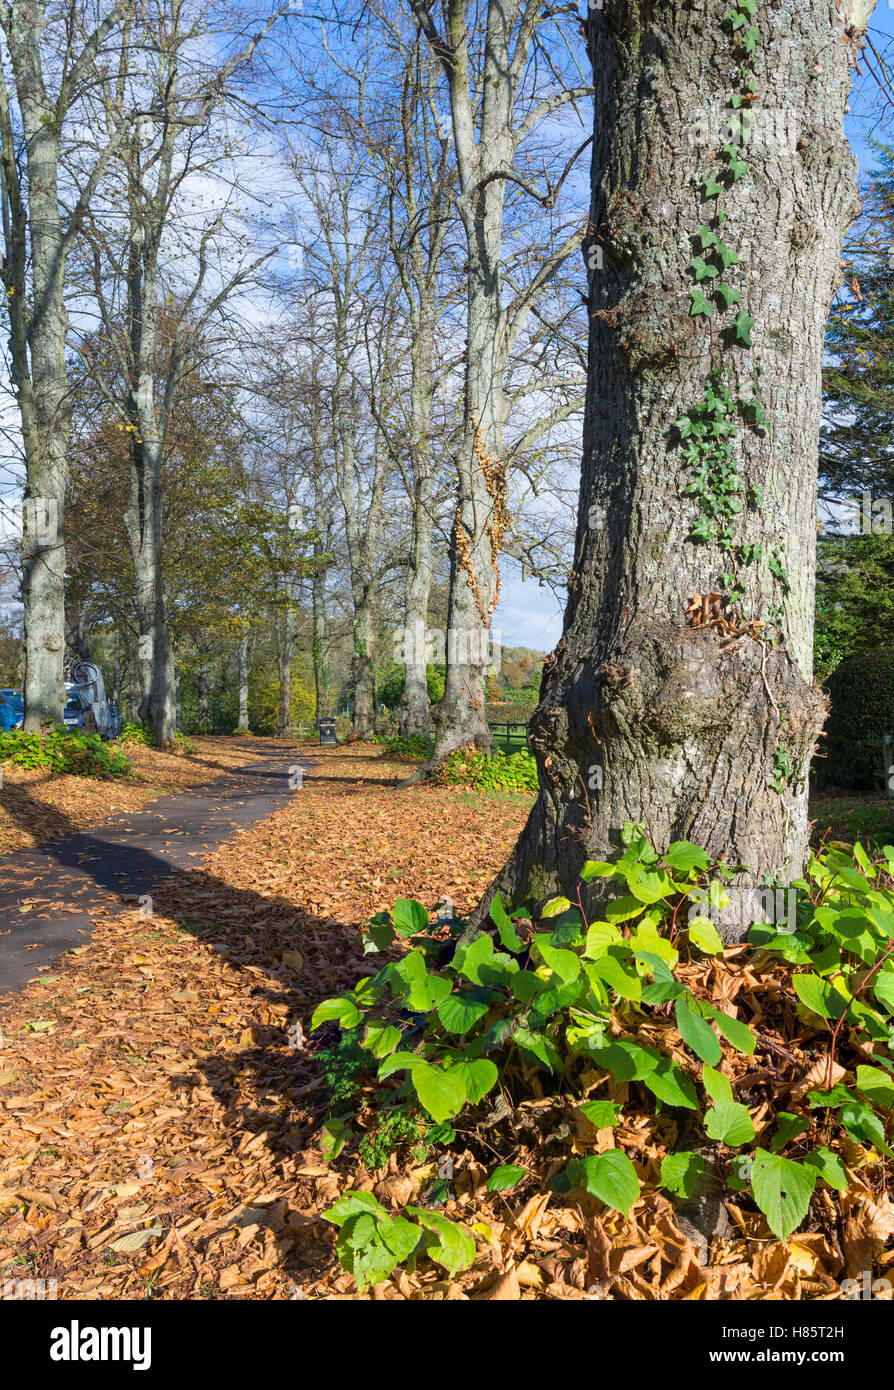 Les arbres d'automne et les feuilles sur le sol à l'automne à Arundel, West Sussex, Angleterre, Royaume-Uni. Banque D'Images